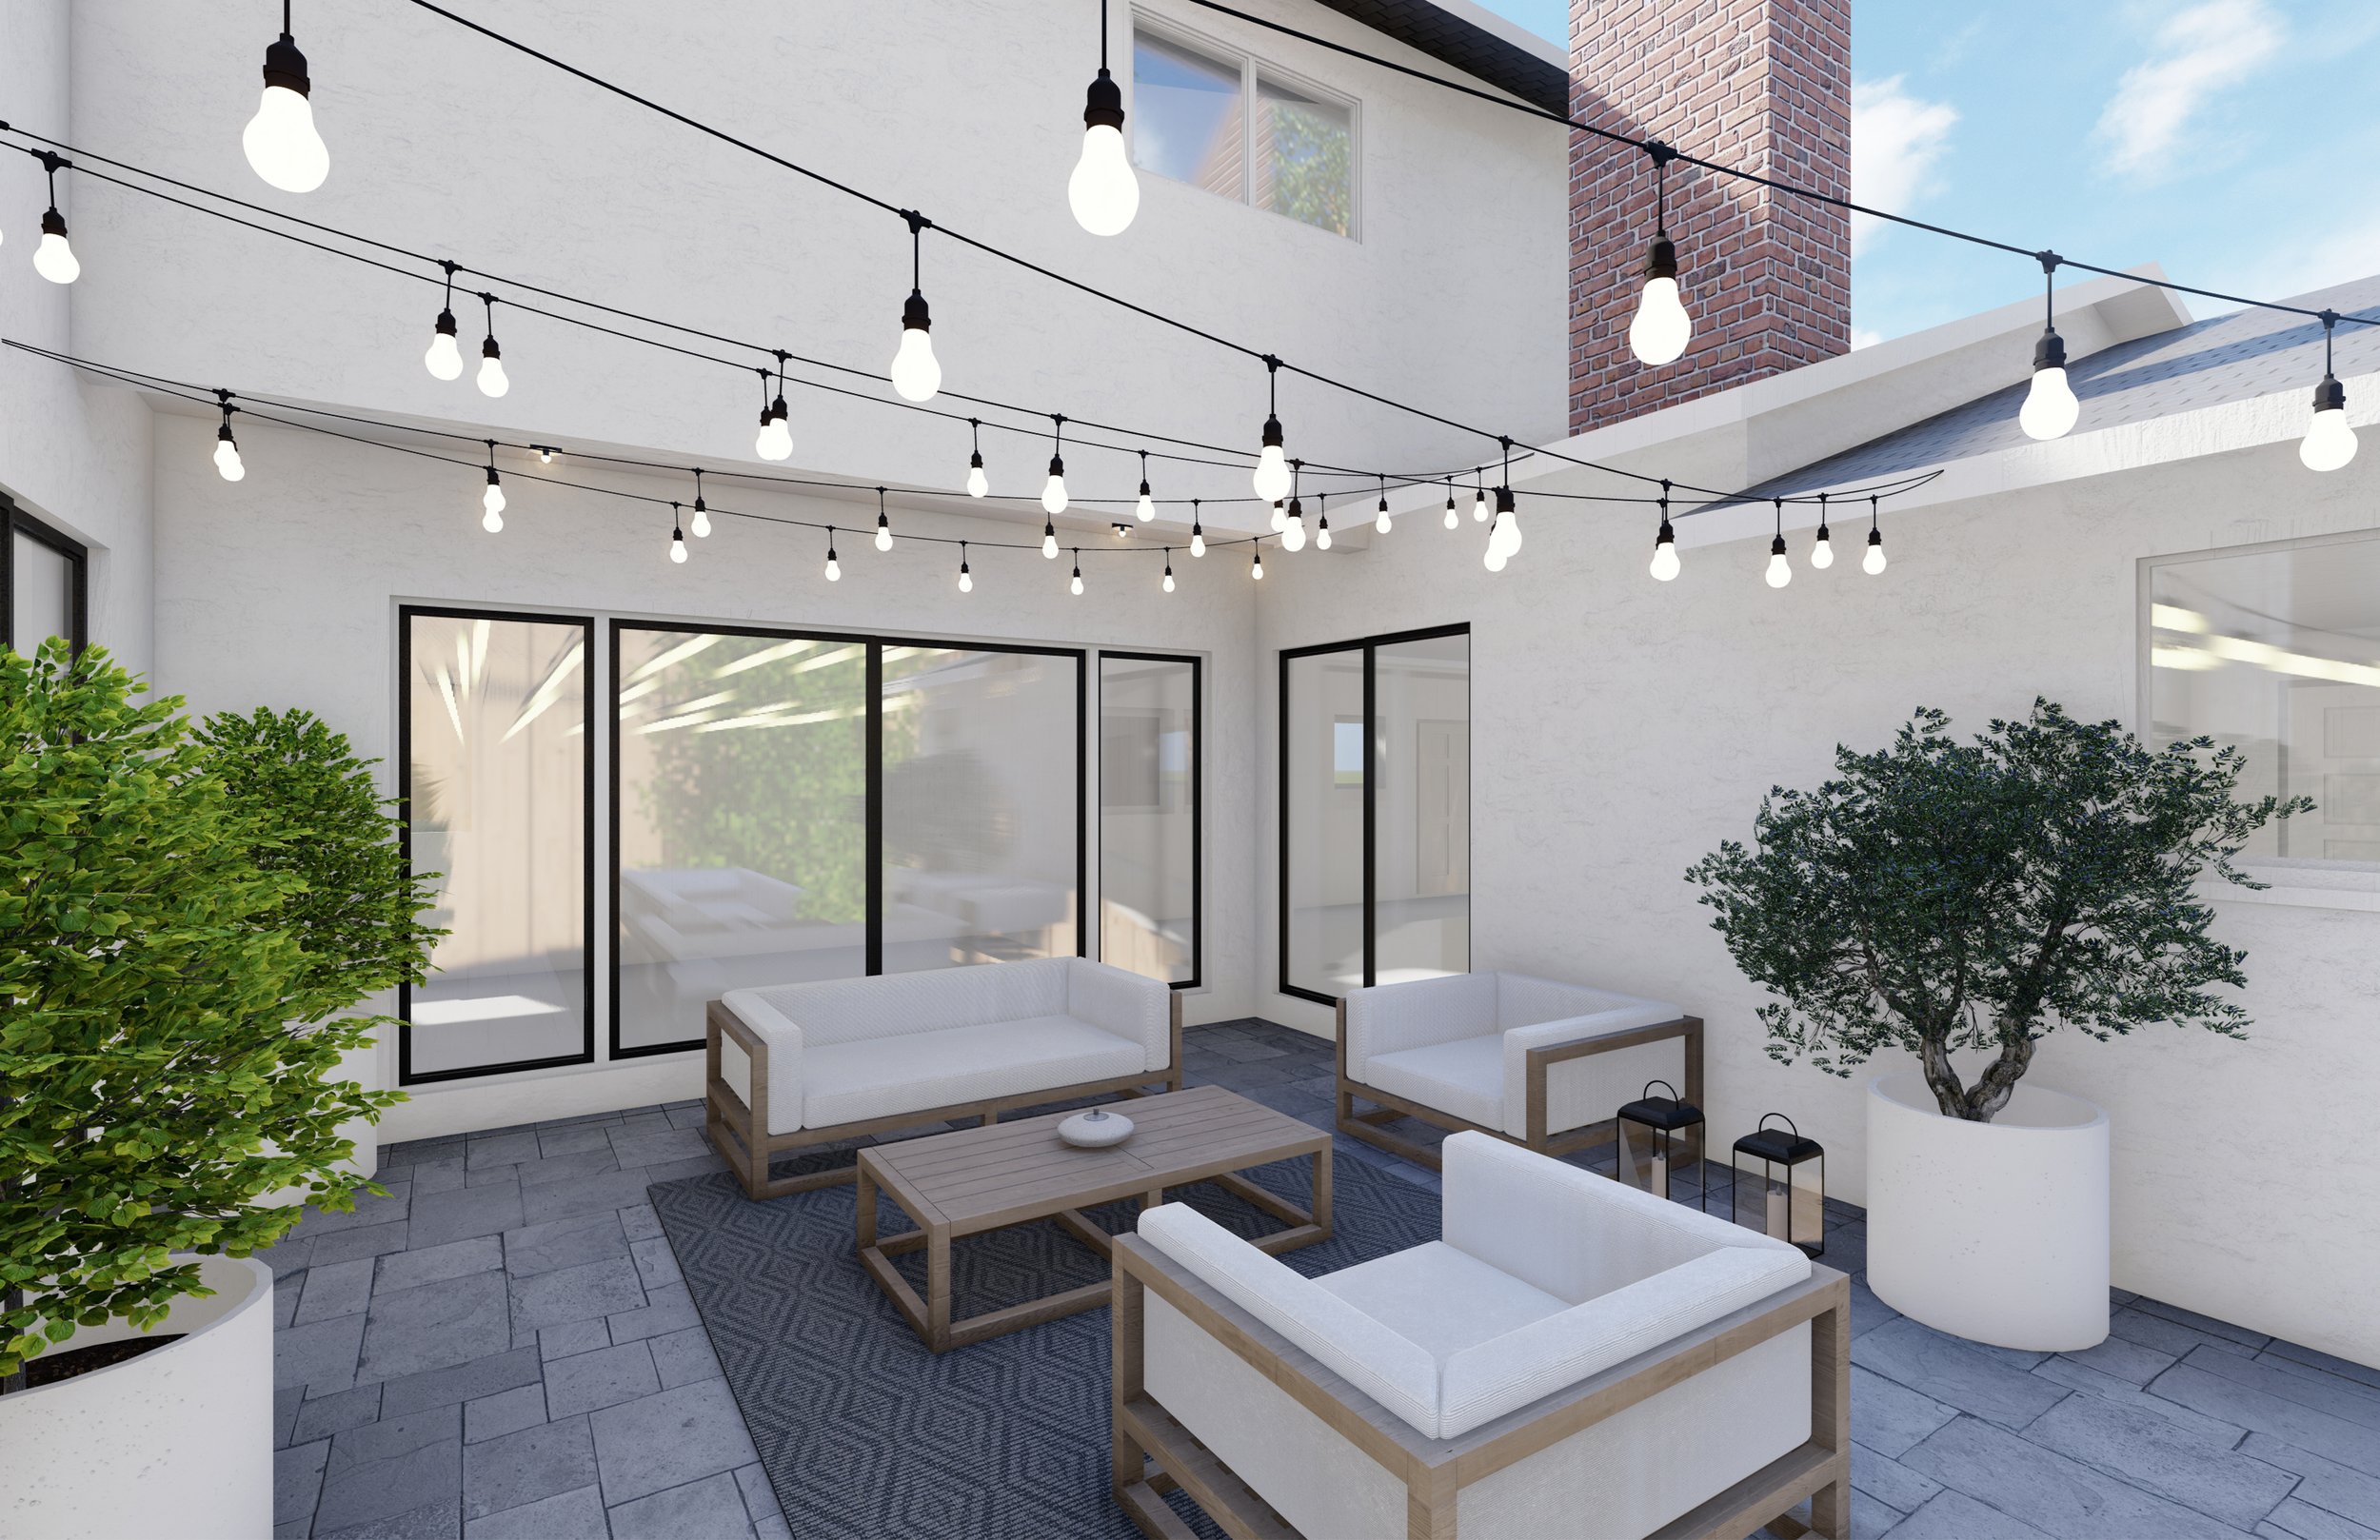 庭院设计与水泥混凝土摊铺机天井和柚木户外沙发、躺椅和咖啡桌开销字符串灯。